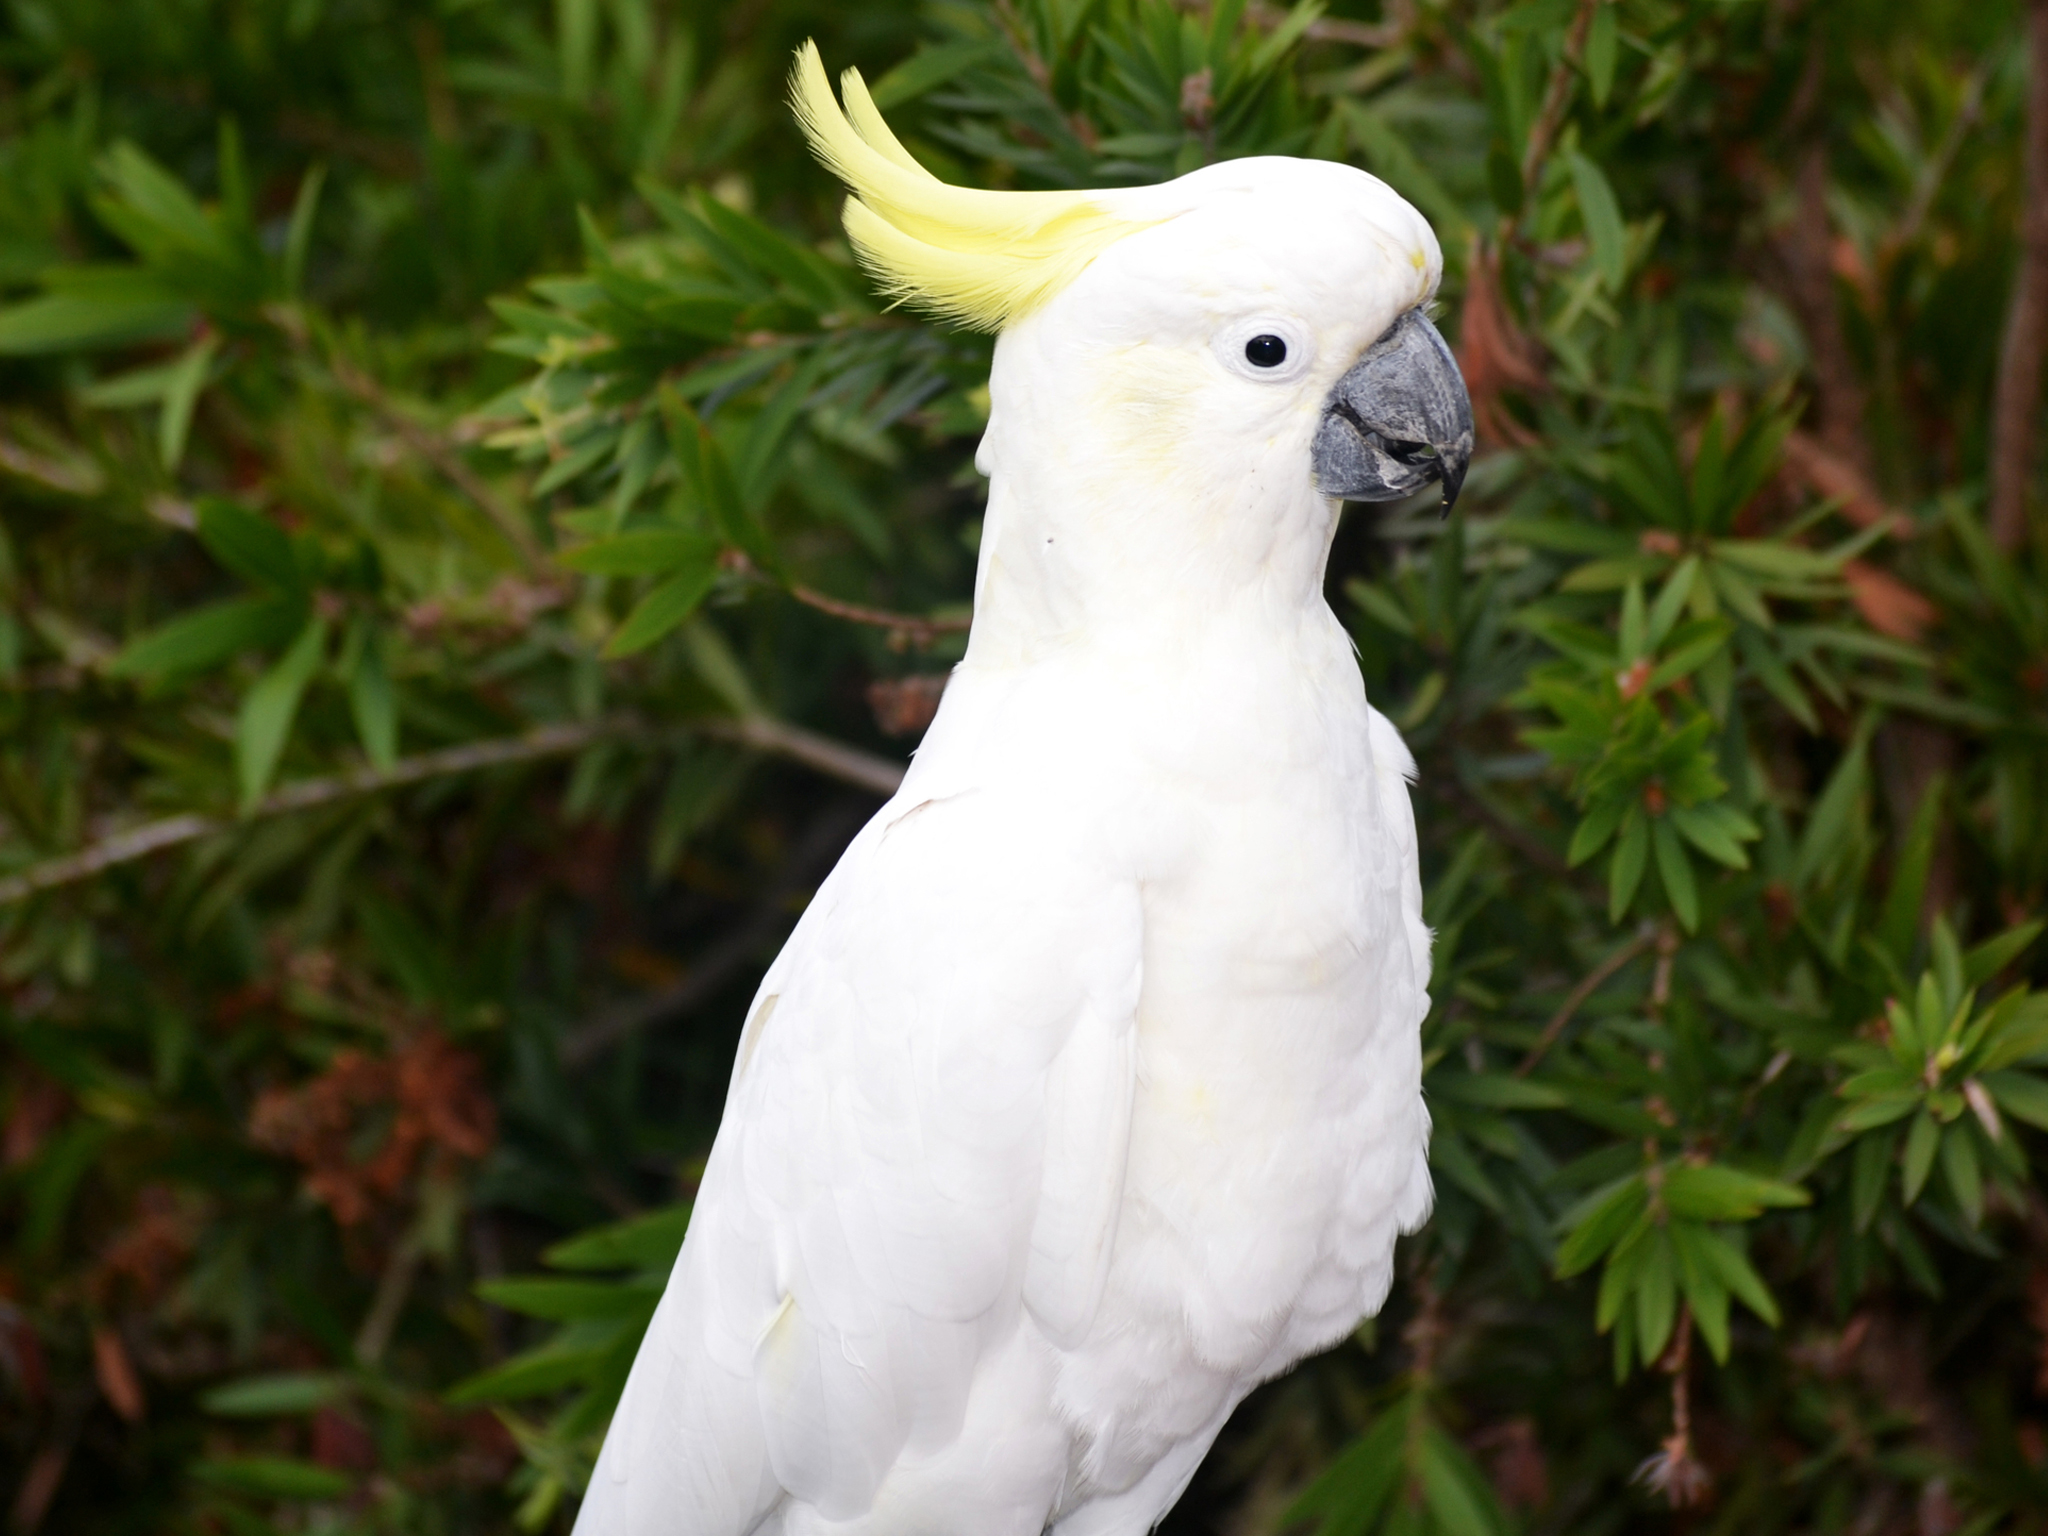 A white cockatoo